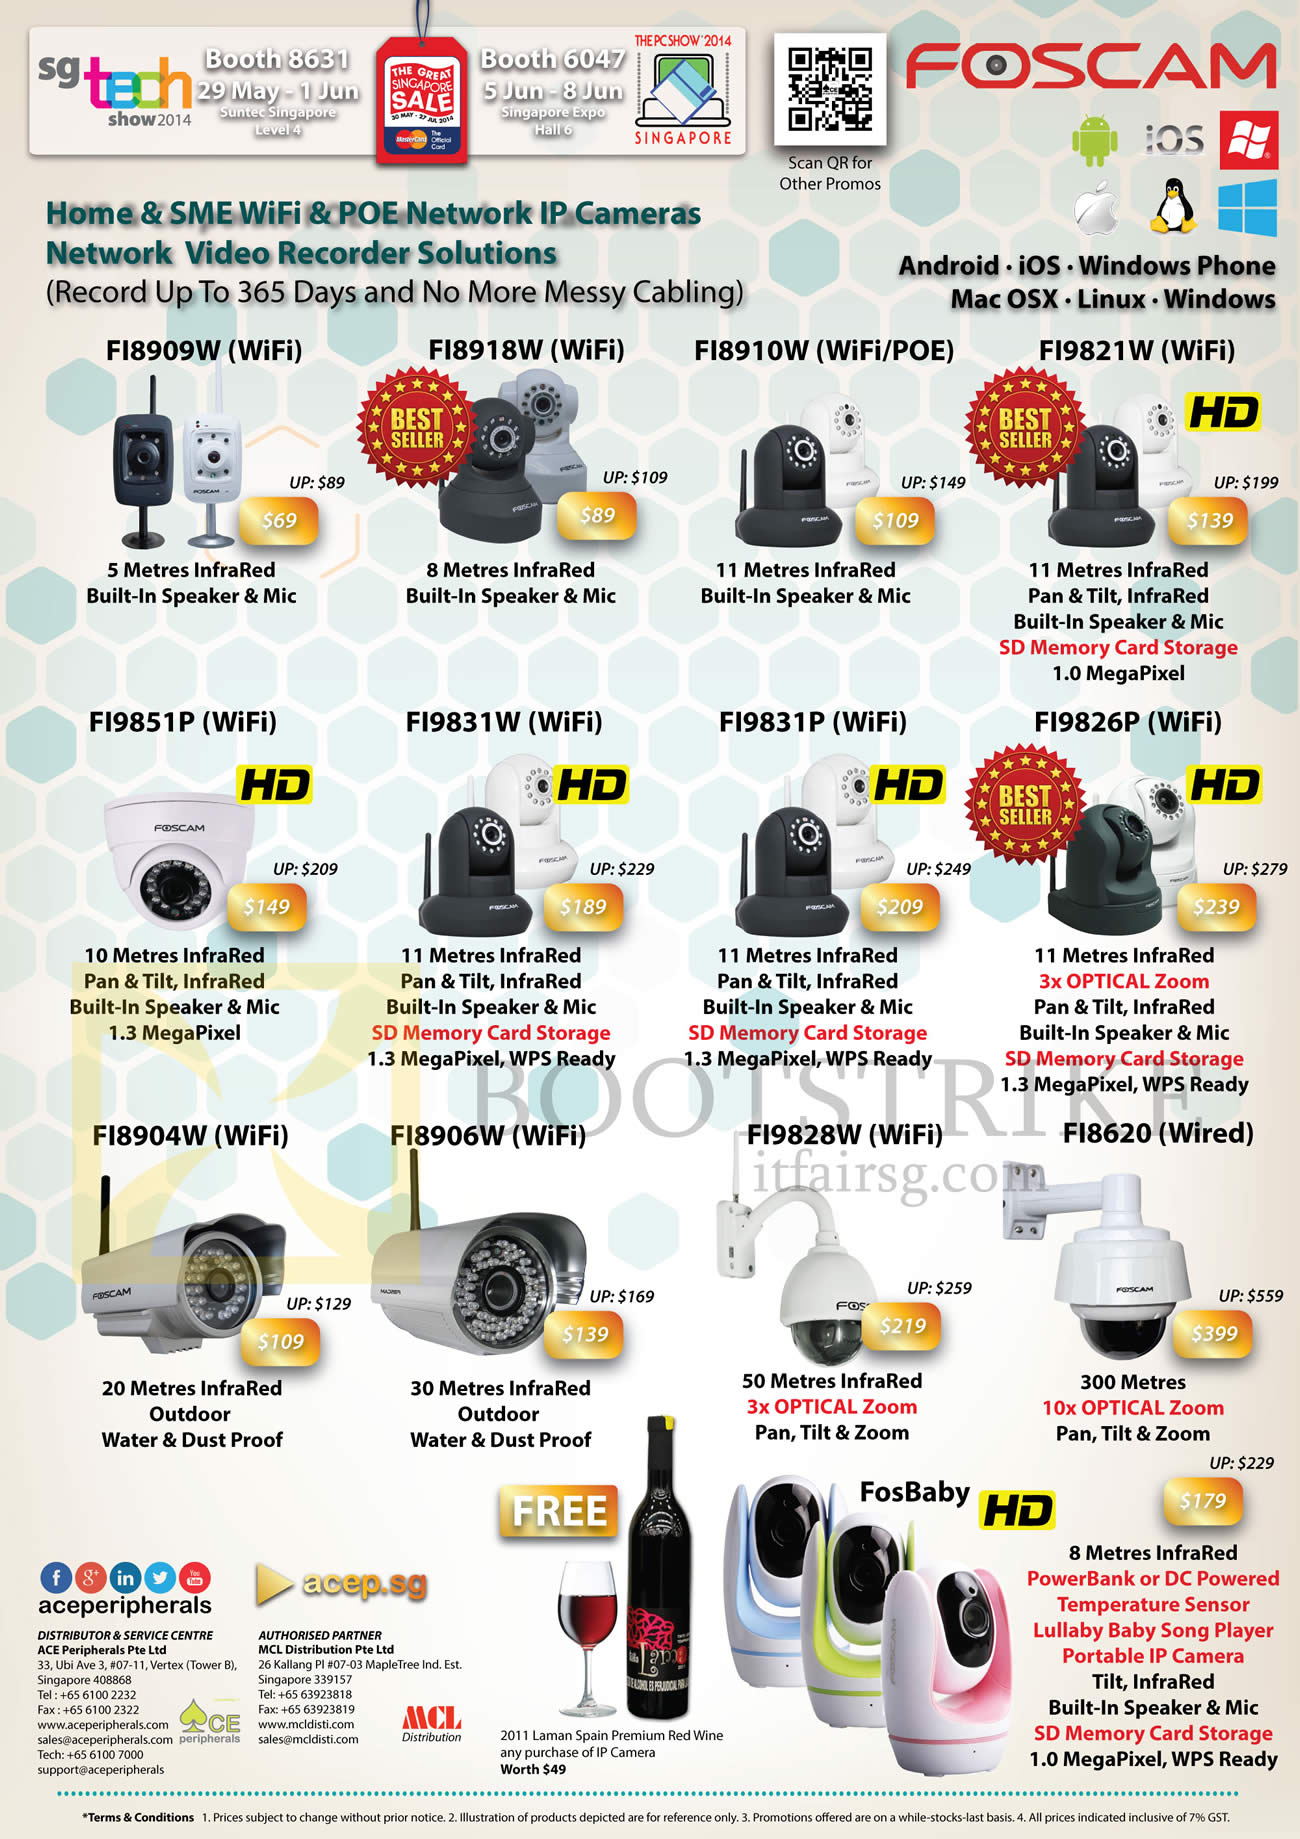 PC SHOW 2014 price list image brochure of ACE Peripherals Foscam IP Cameras FI8909W, FI8918W, FI8910W, FI9821W, FI9851W, FI9831W, FI9831P, FI9826P, FI8904W, FI8906W, FI8918, FI8620